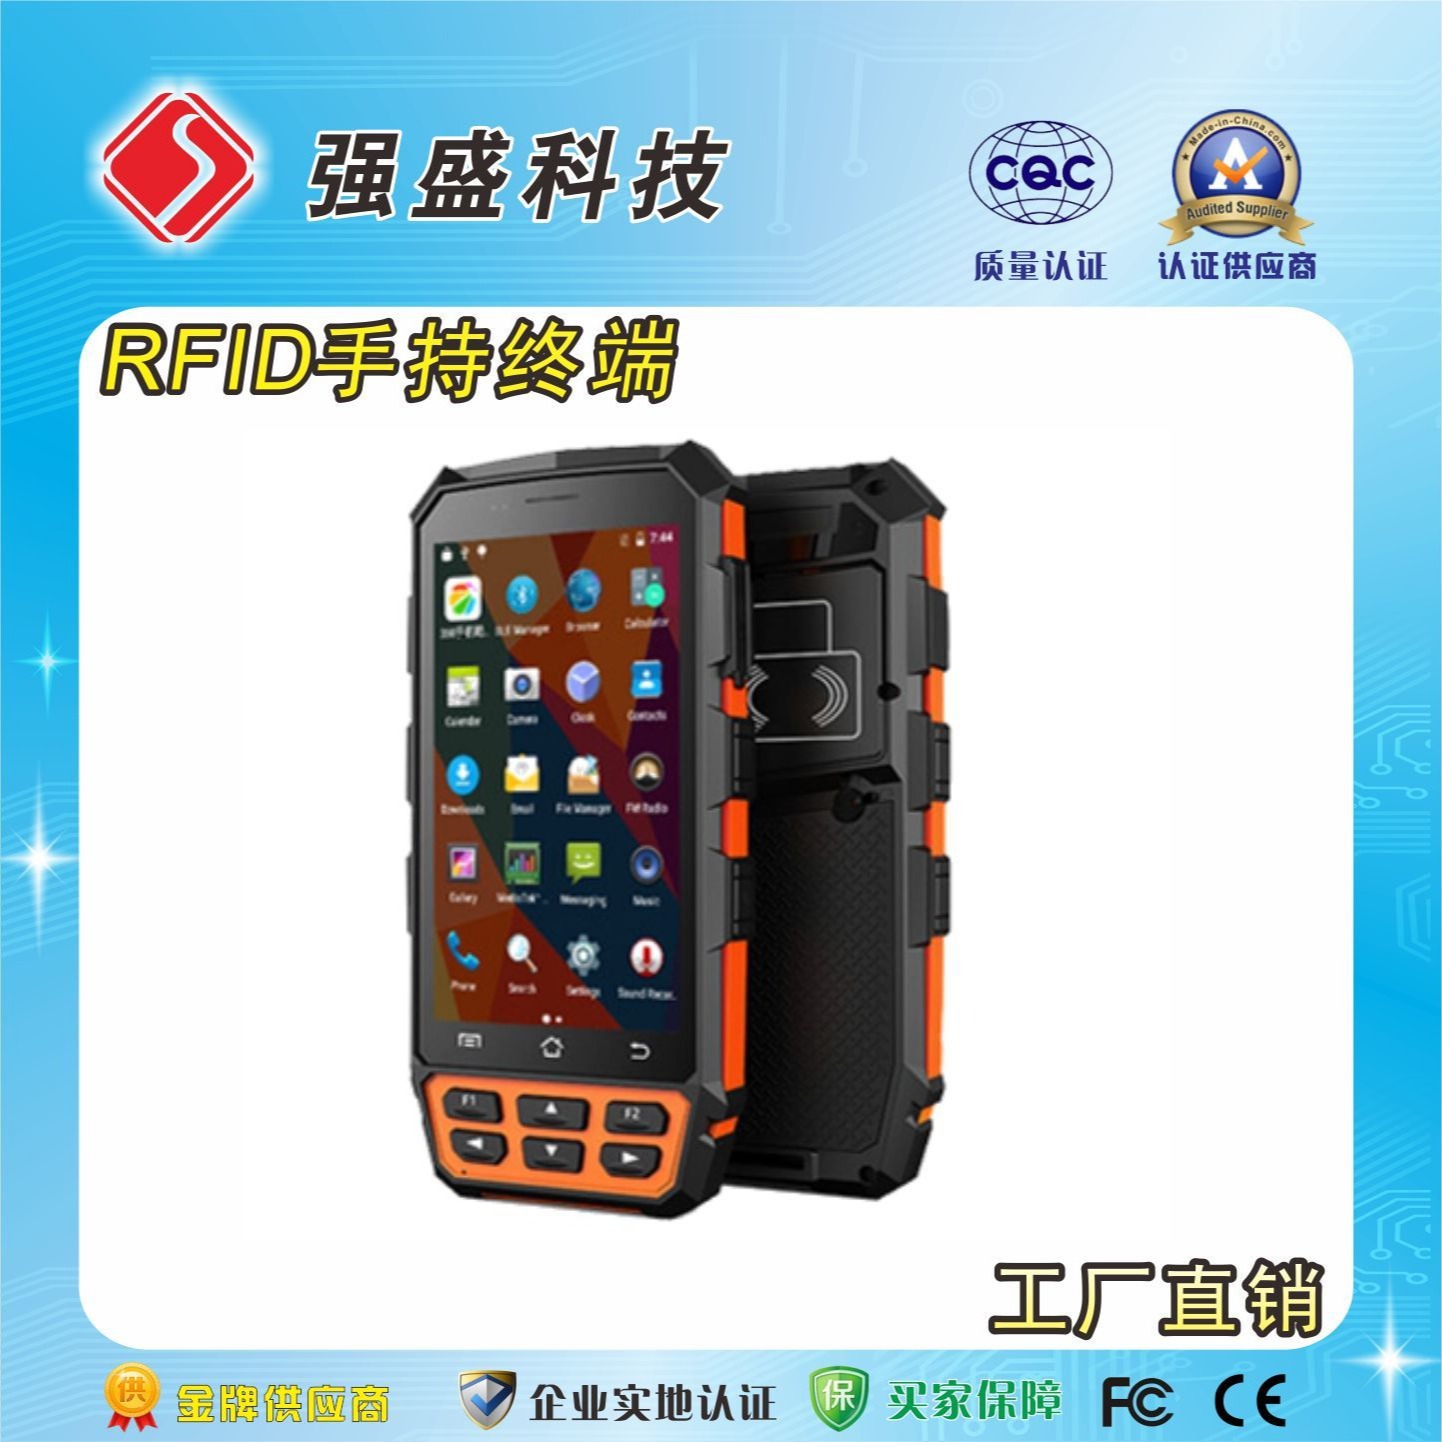 厂家供应UHF安卓手持机 QS-9222 手持式RFID读写器